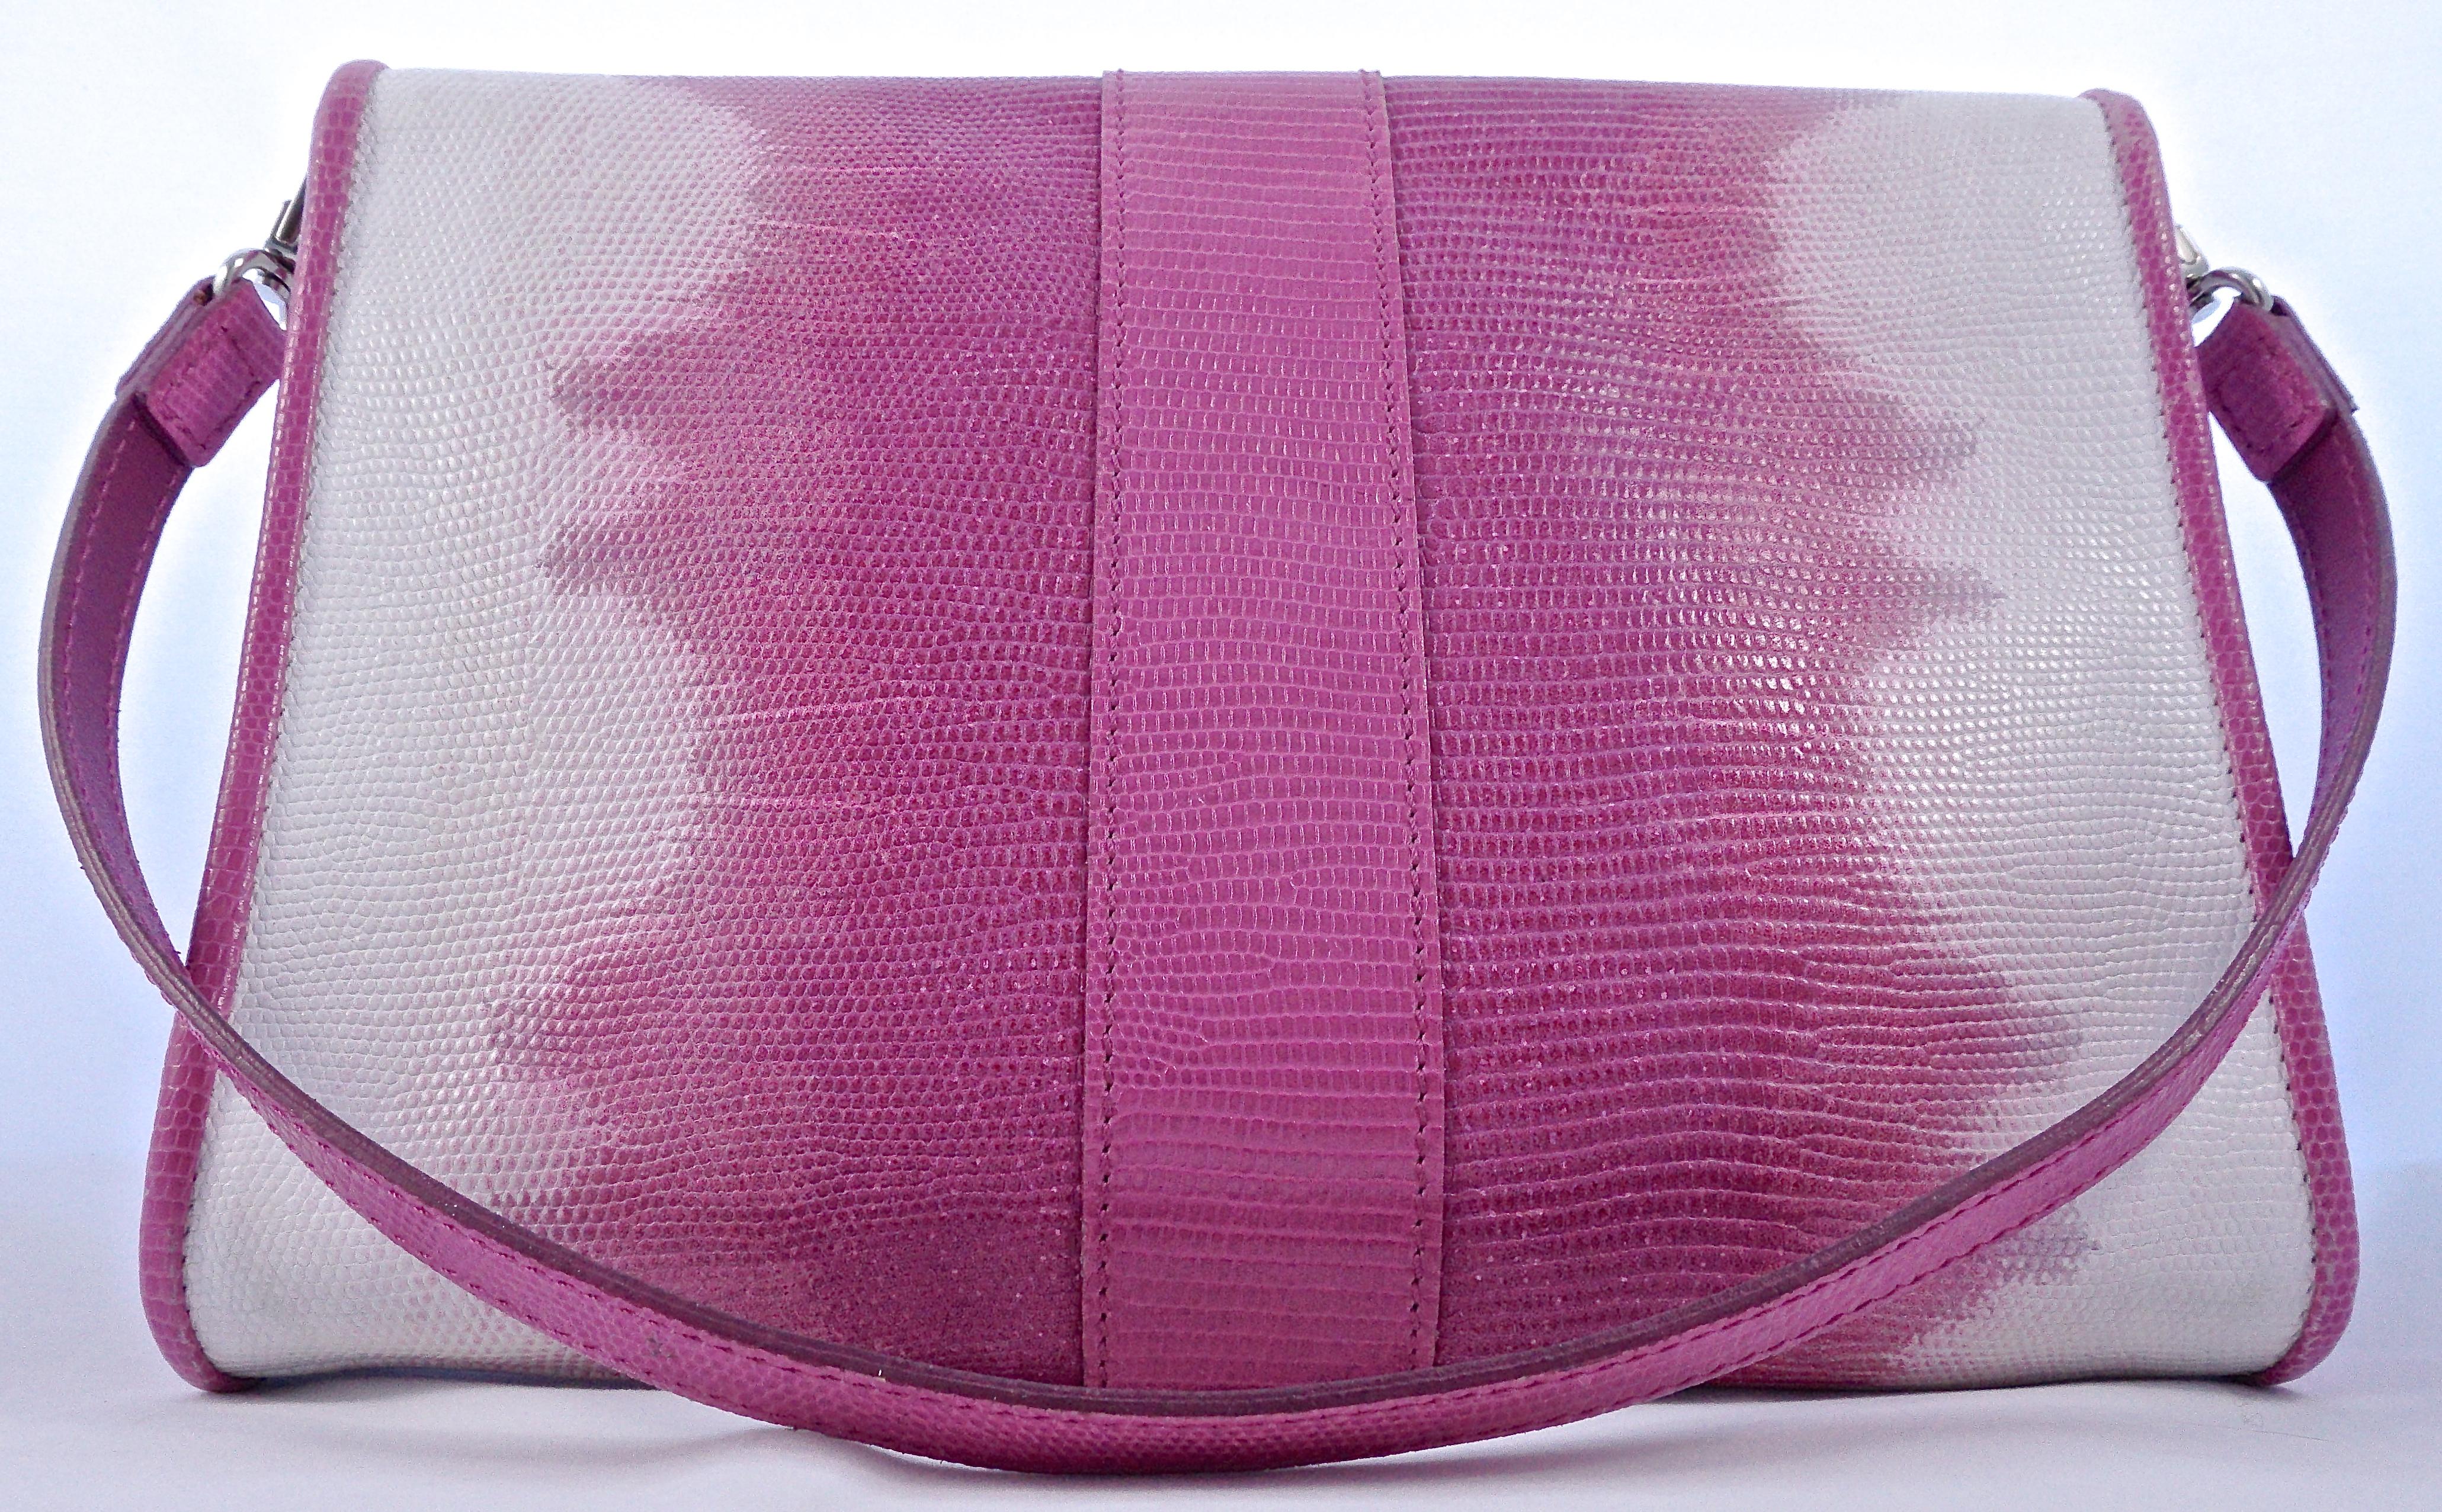 Kate Moss für Longchamp Handtasche aus Leder mit Schlangeneffekt in Rosa und Weiß und mit einer großen Schnalle. Länge 24,7 cm / 9,72 Zoll, Höhe 8,5 cm / 7,28 Zoll und Tiefe 4,3 cm / 1,69 Zoll. Der Griff ist 22cm / 8,66 Zoll lang. Sie hat